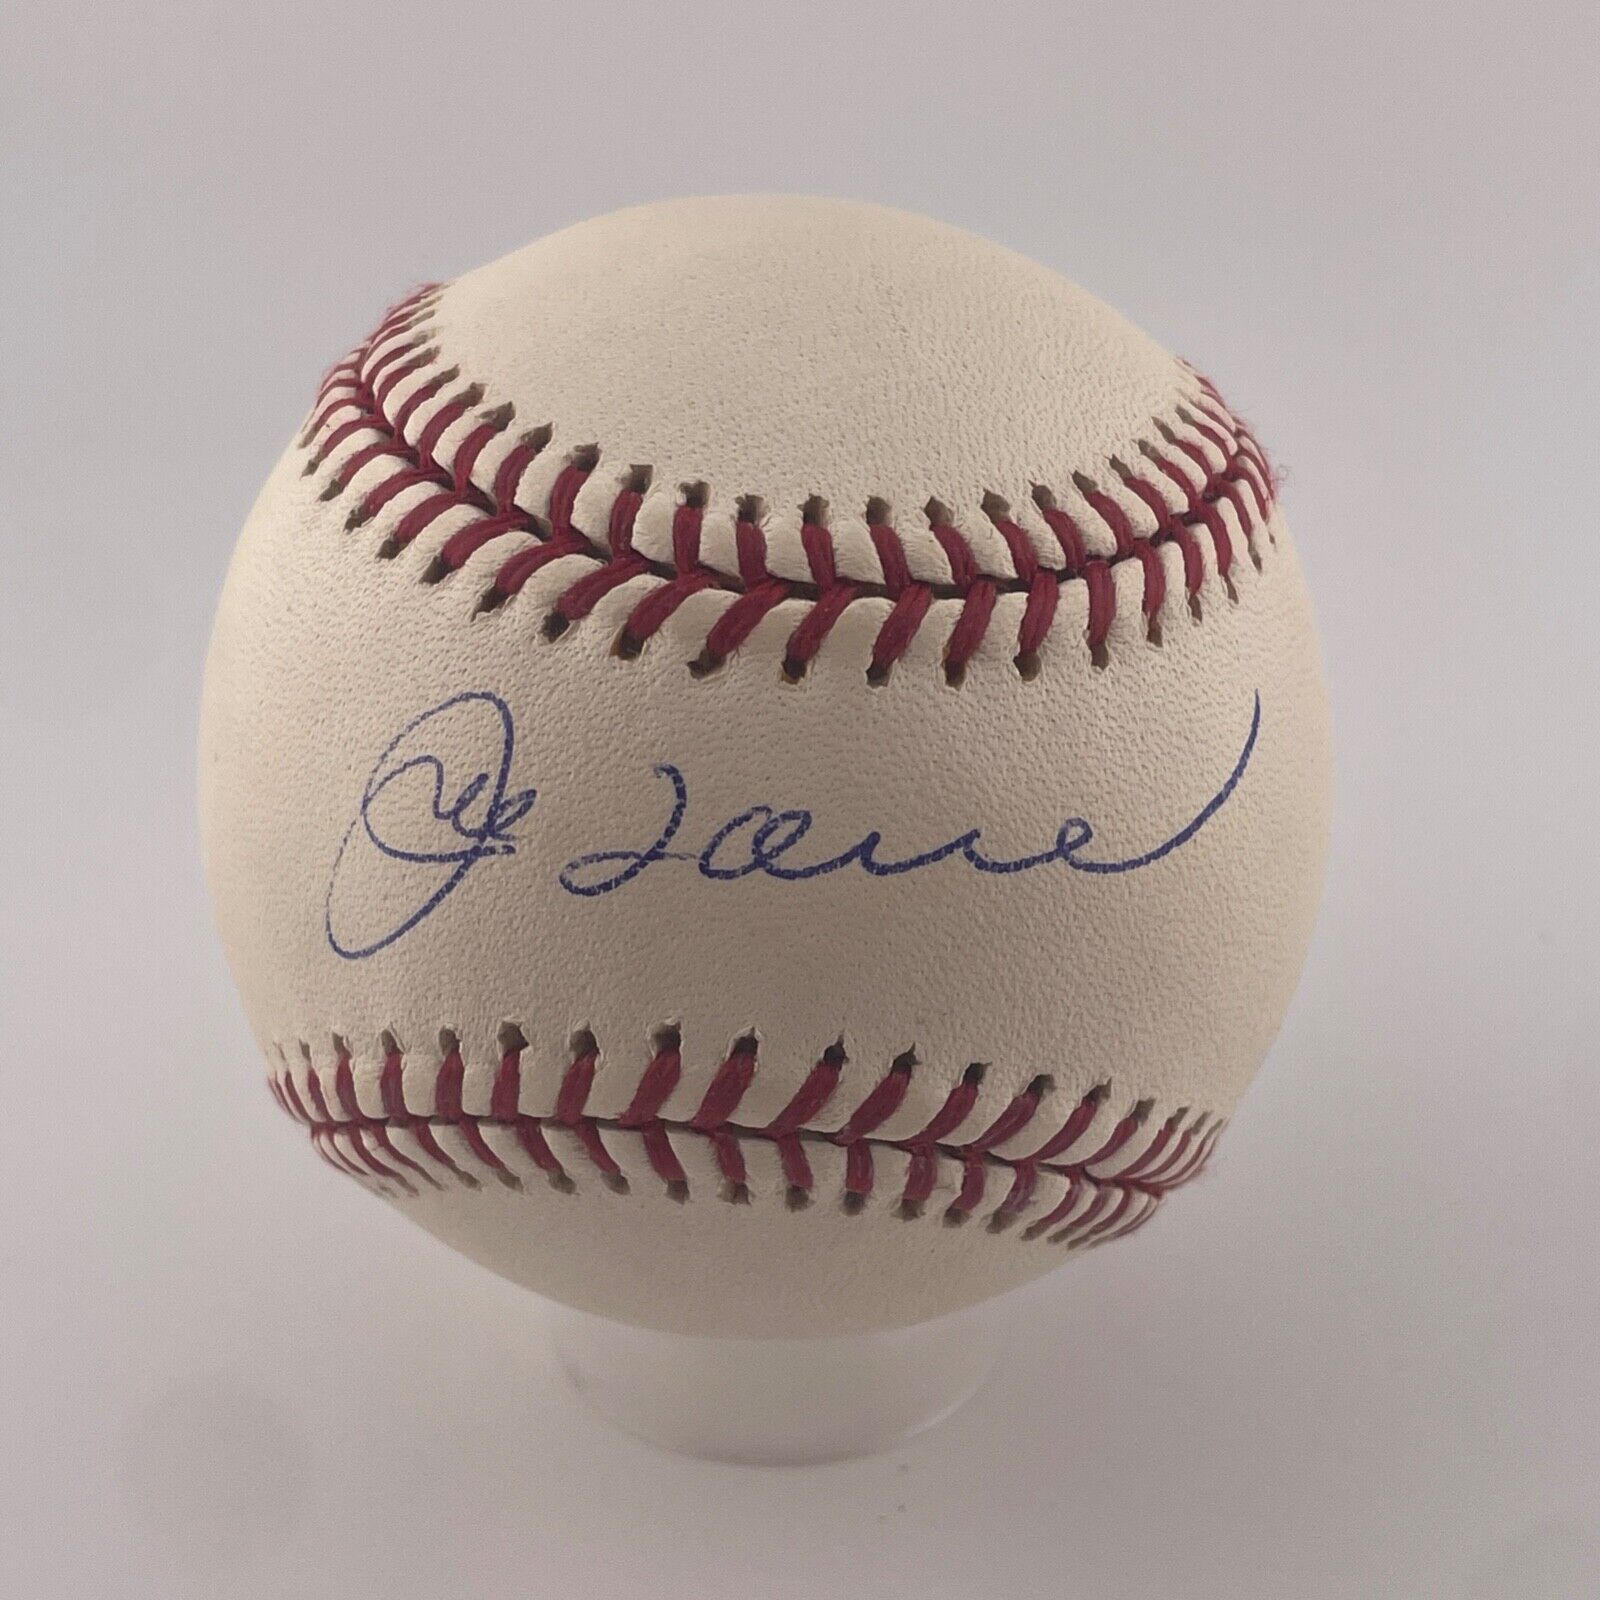 Joe Torre Signed Baseball. Hall of Fame. JSA